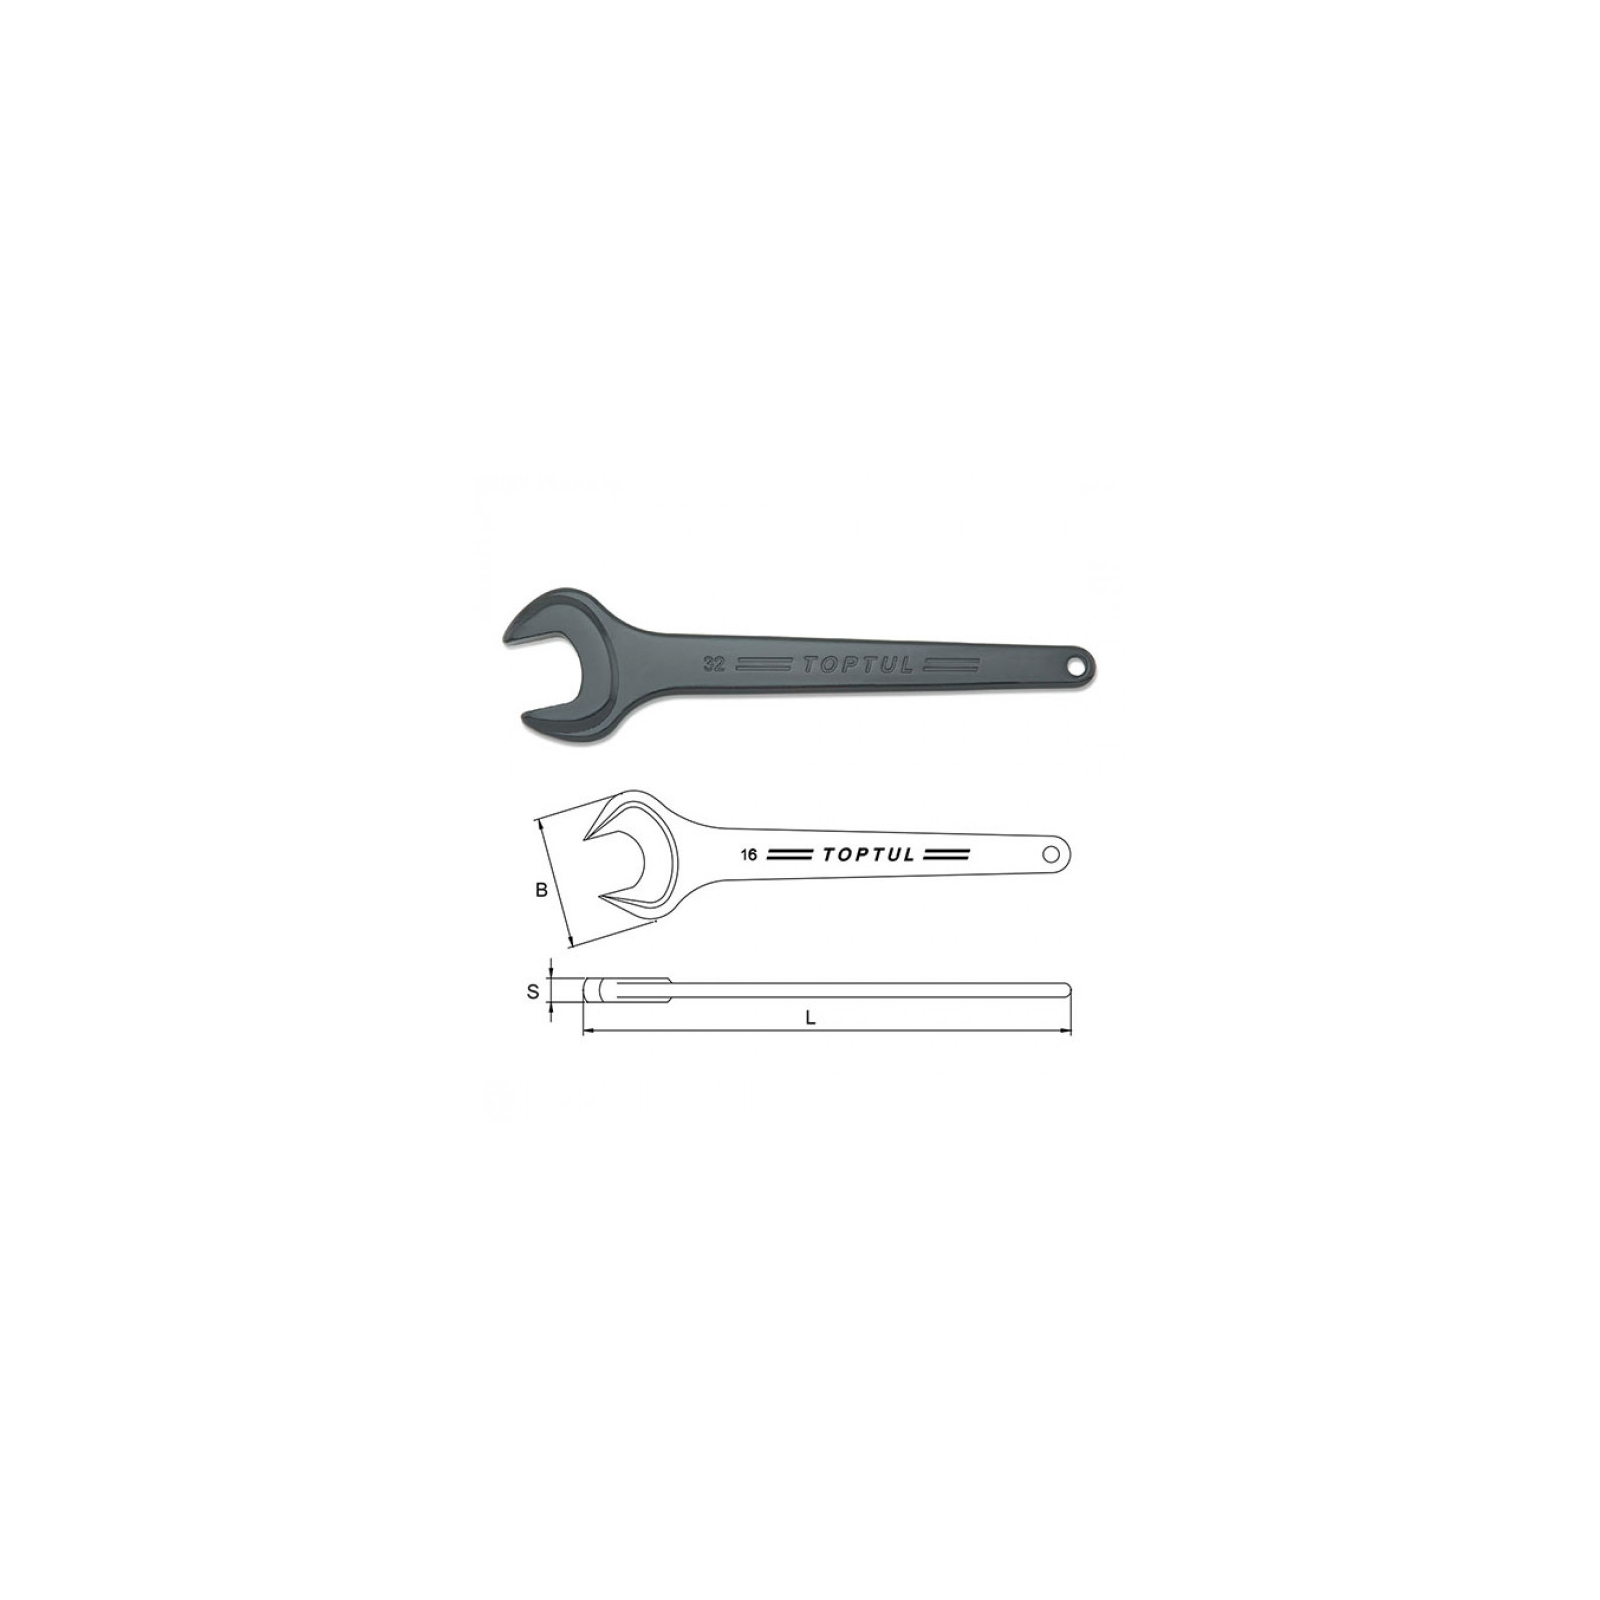 Ключ Toptul рожковый односторонний (усиленный) 21мм (AAAT2121) изображение 2